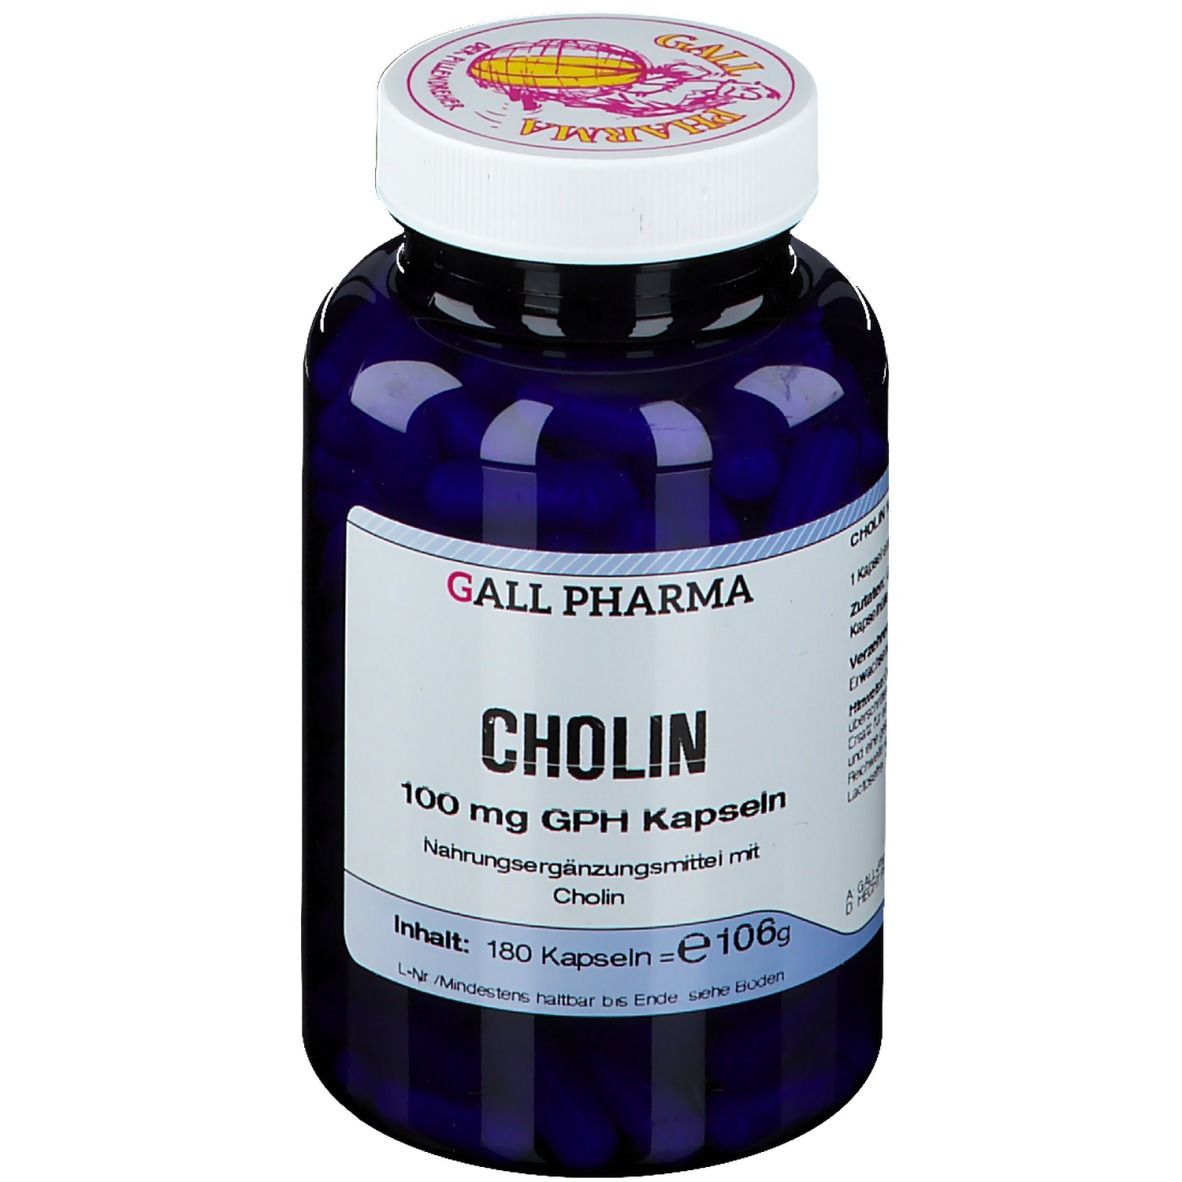 Image of GALL PHARMA Cholin 100 mg GPH Kapseln